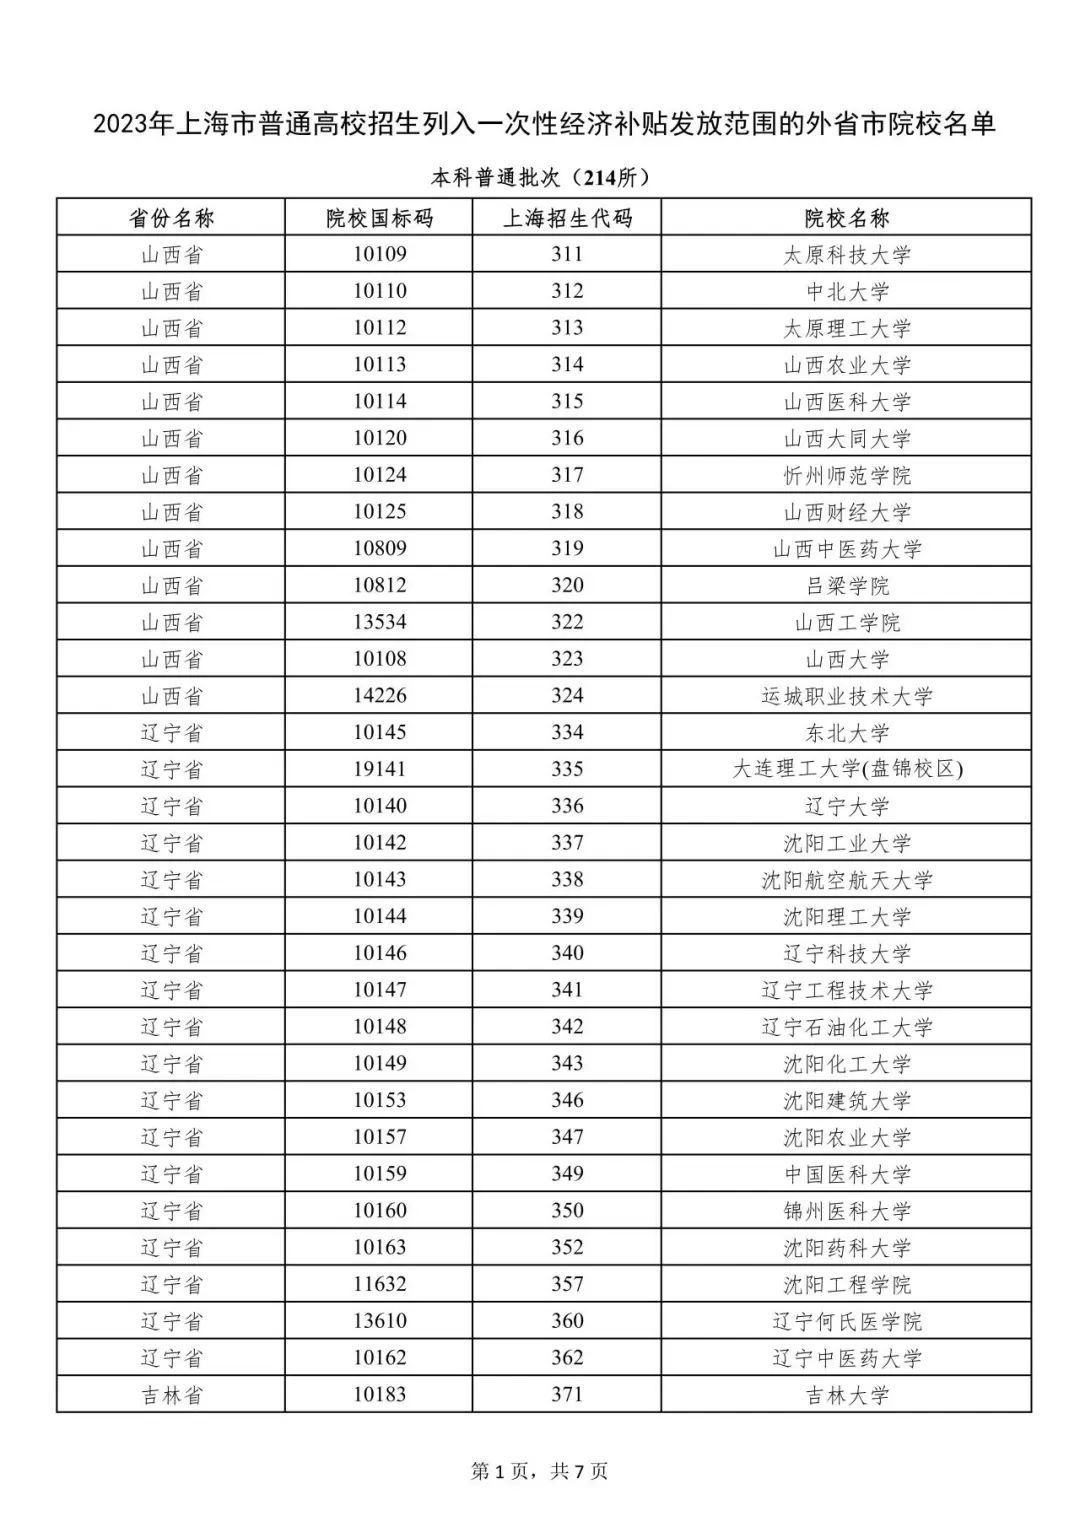 上海市一次性经济补贴发放范围的外省市院校名单